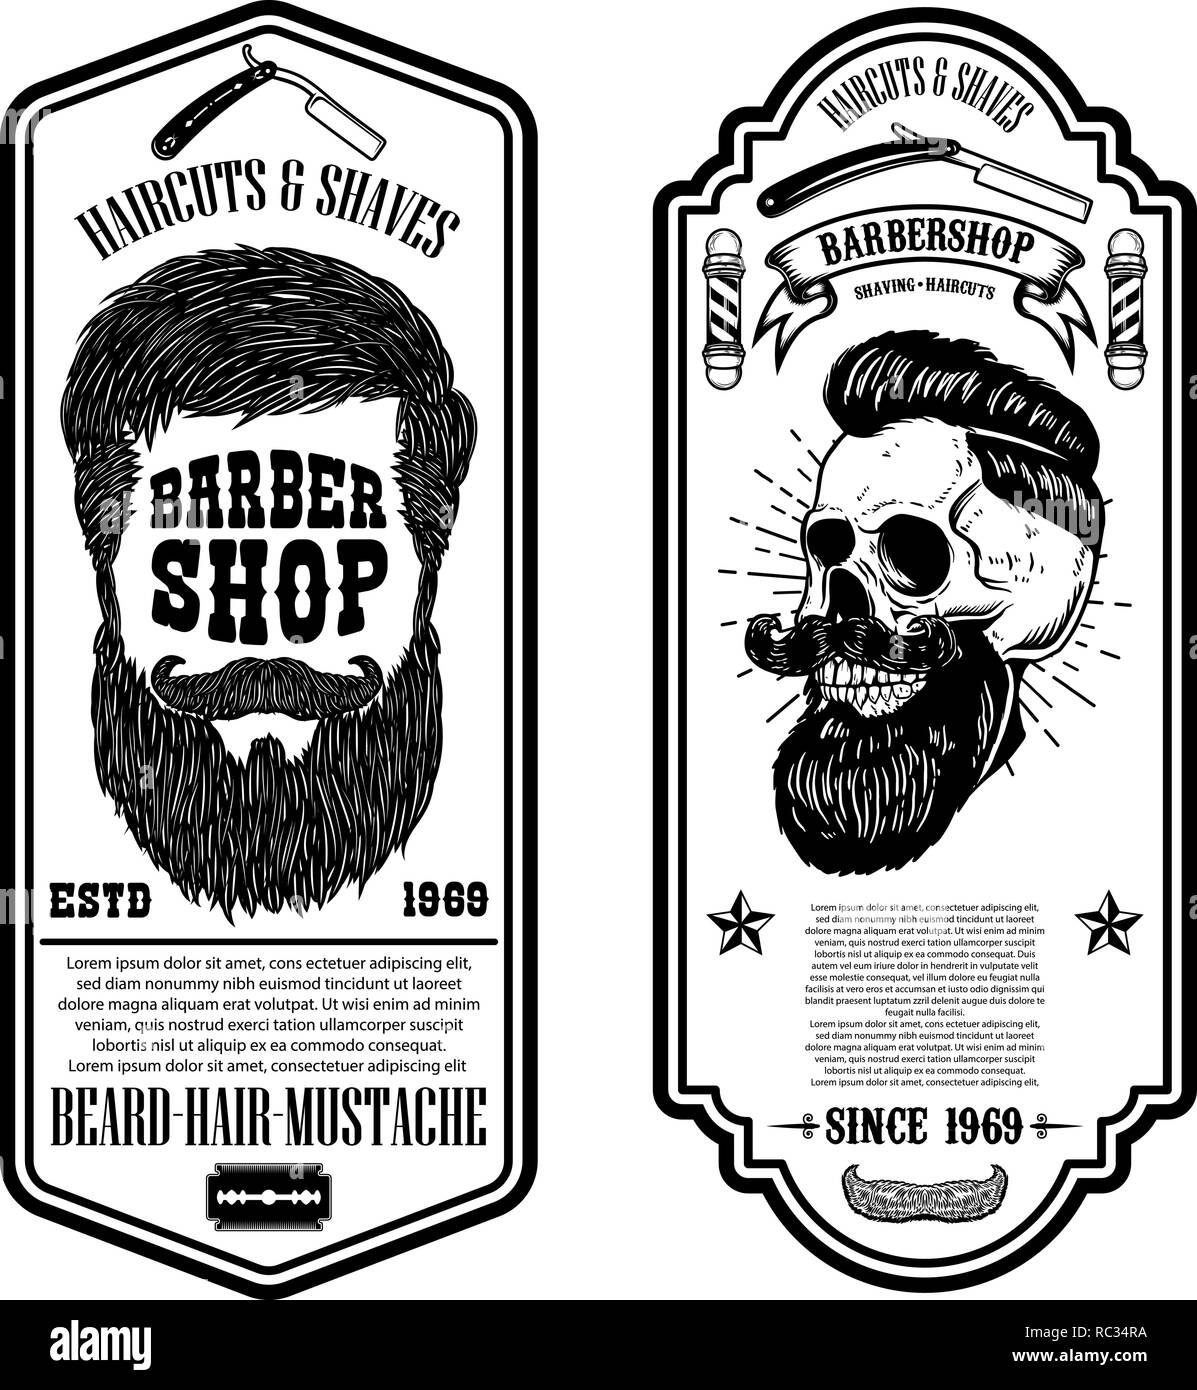 Barber shop flyer template. Barber's skull and tools on grunge background. Design element for emblem, sign, poster, card, banner. Vector illustration Stock Vector